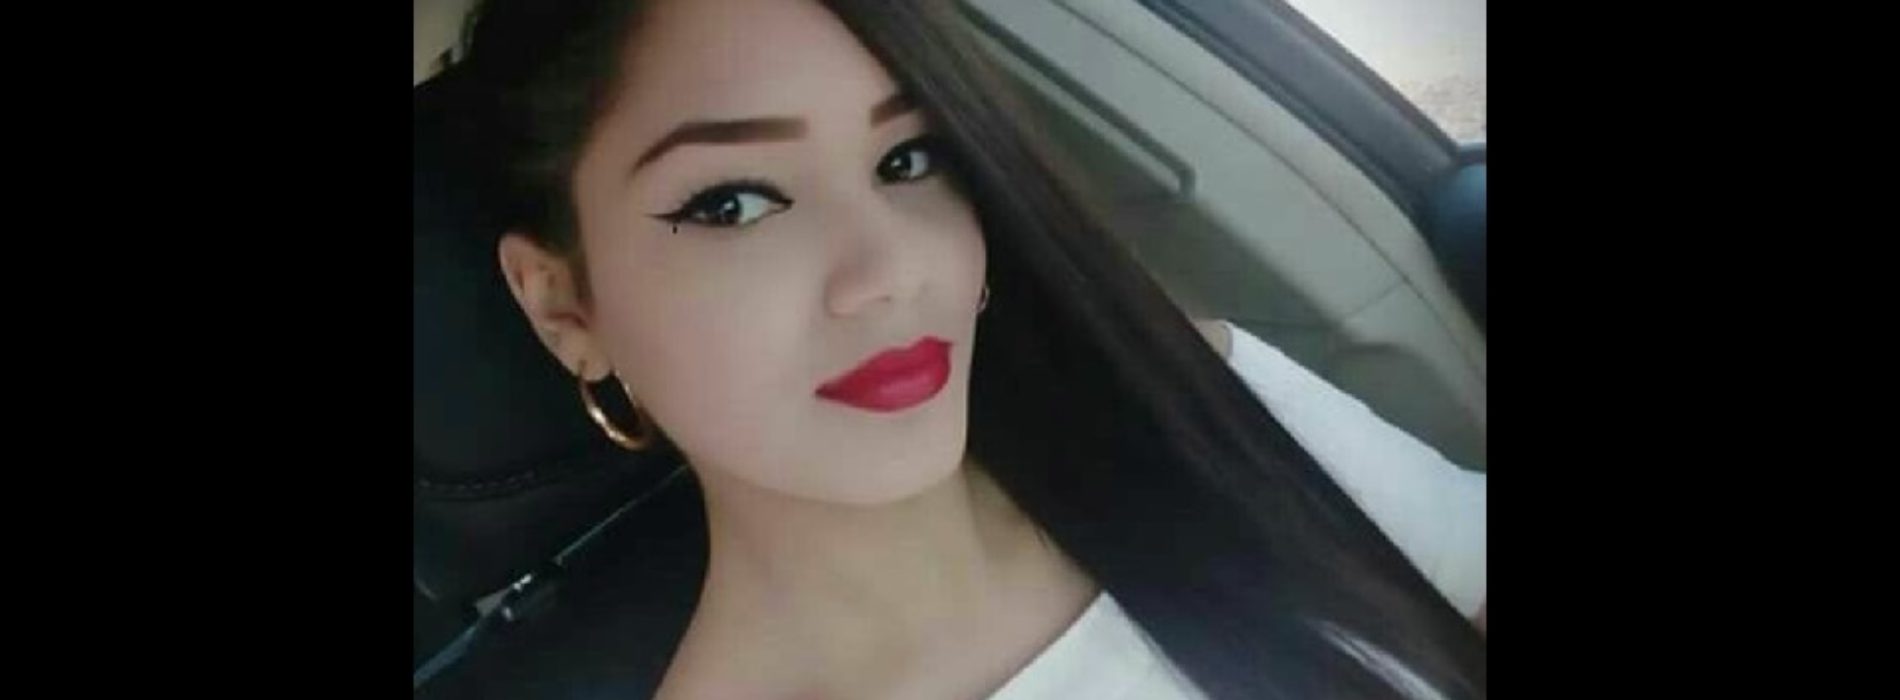 Tras semanas desaparecida, encuentran el cuerpo de la joven
Miriam Aguilar en Sinaloa